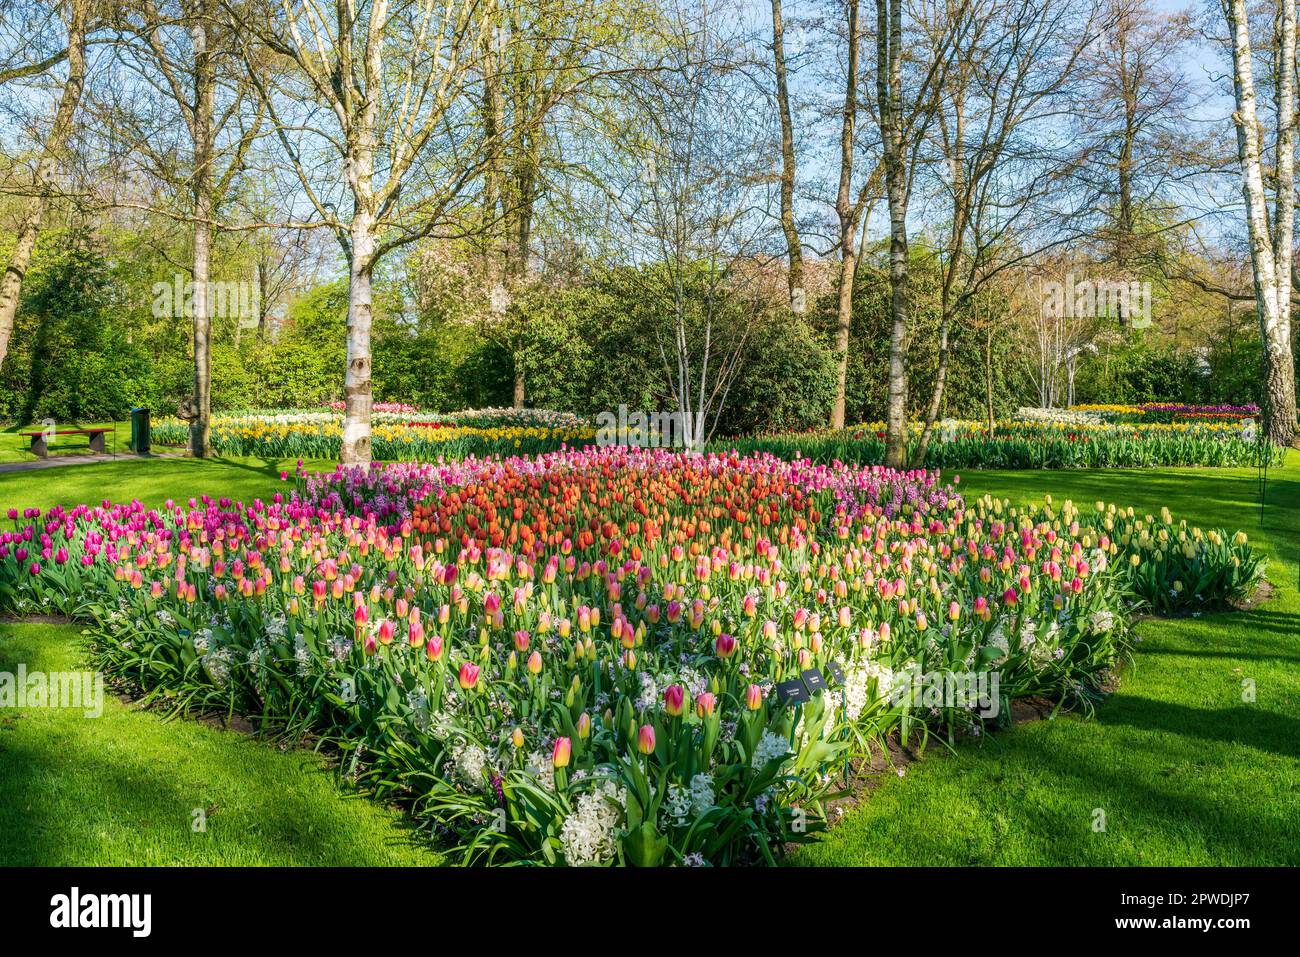 Magnifique jardin de Keukenhof avec tulipes fleuris, Hollande Banque D'Images